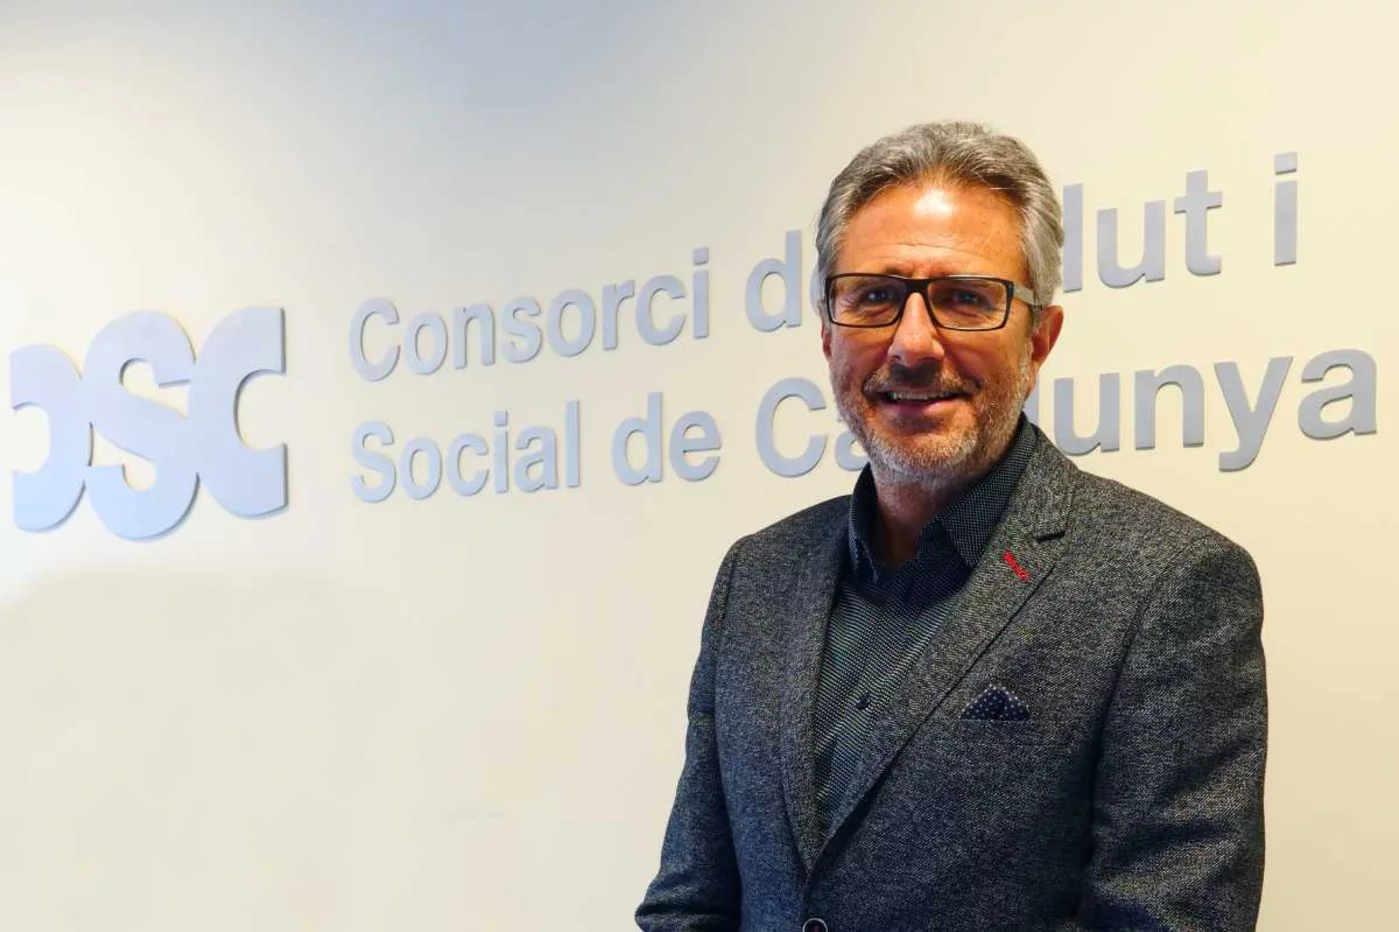 Manel Ferré es actualmente el presidente del Consorcio Sanitario y Social de Cataluña. Foto: CSC